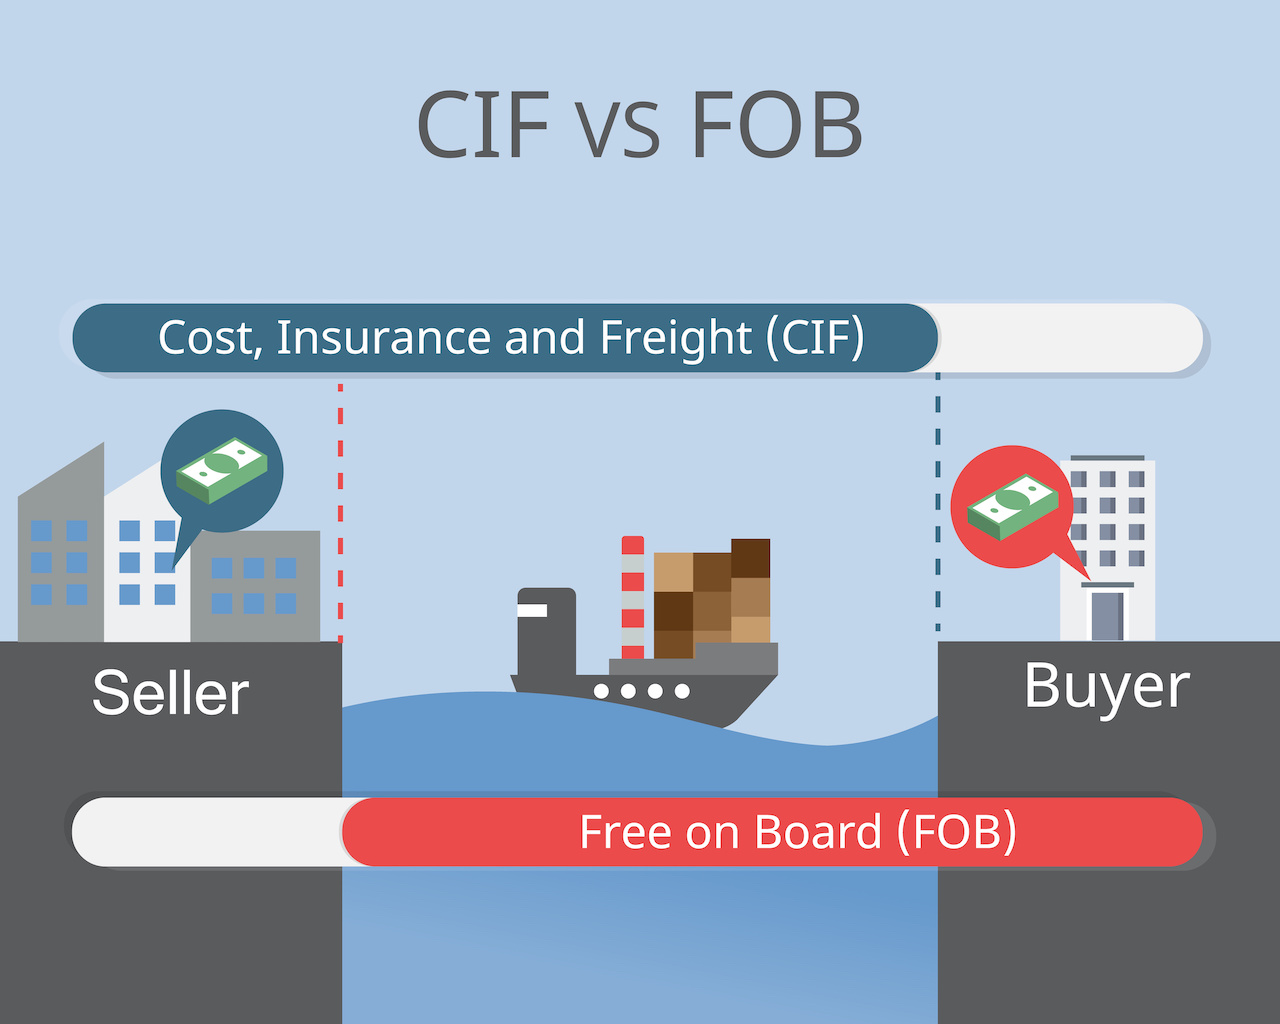 CIF vs FOB